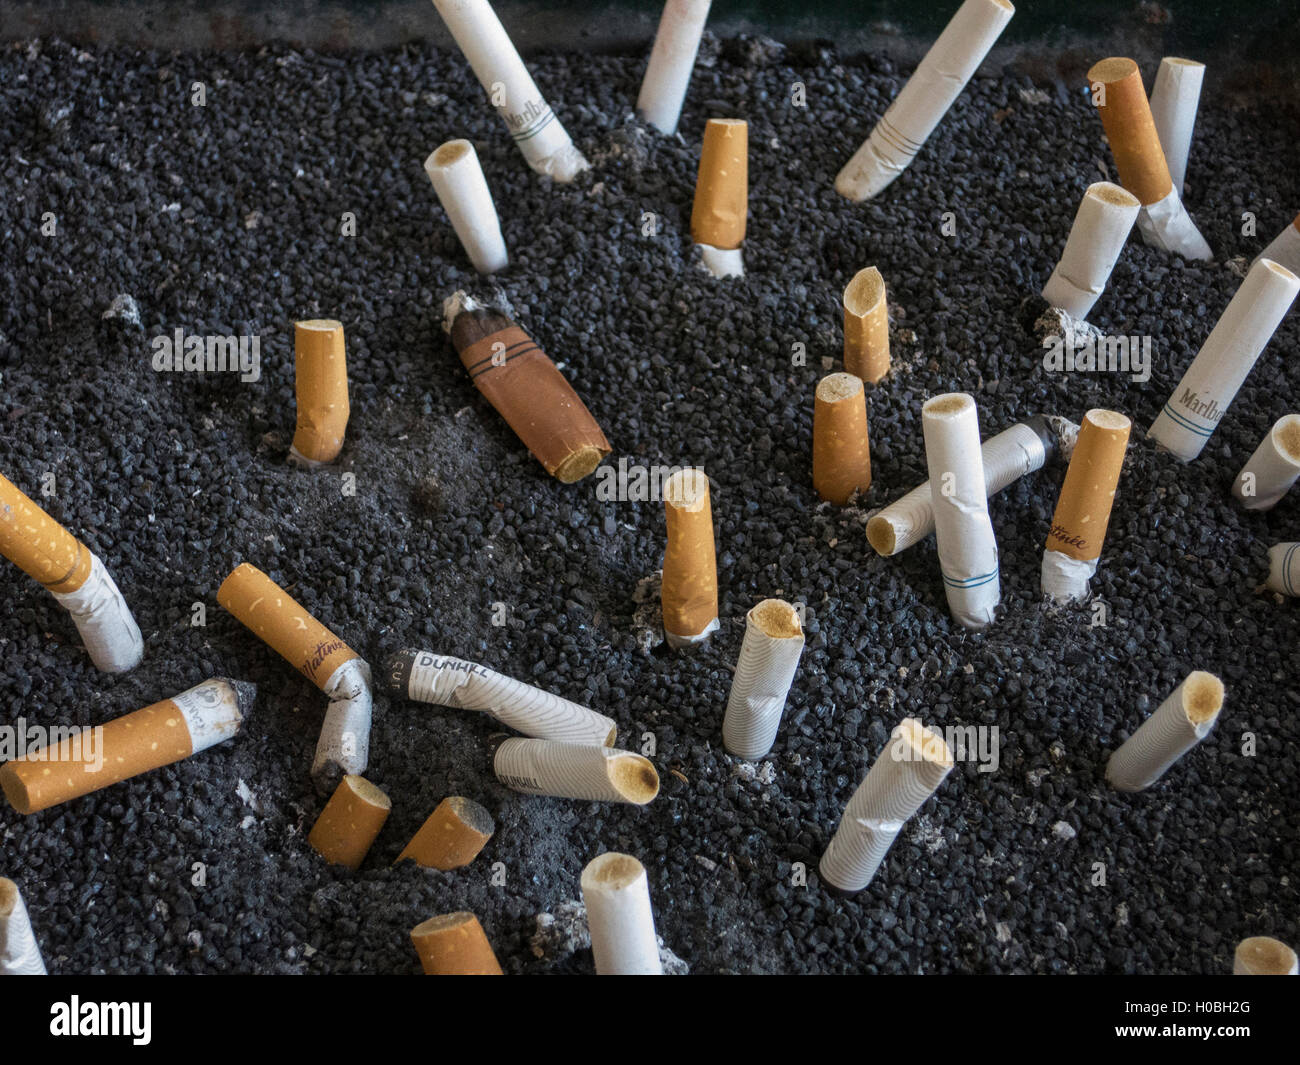 Cigarette butts Stock Photo